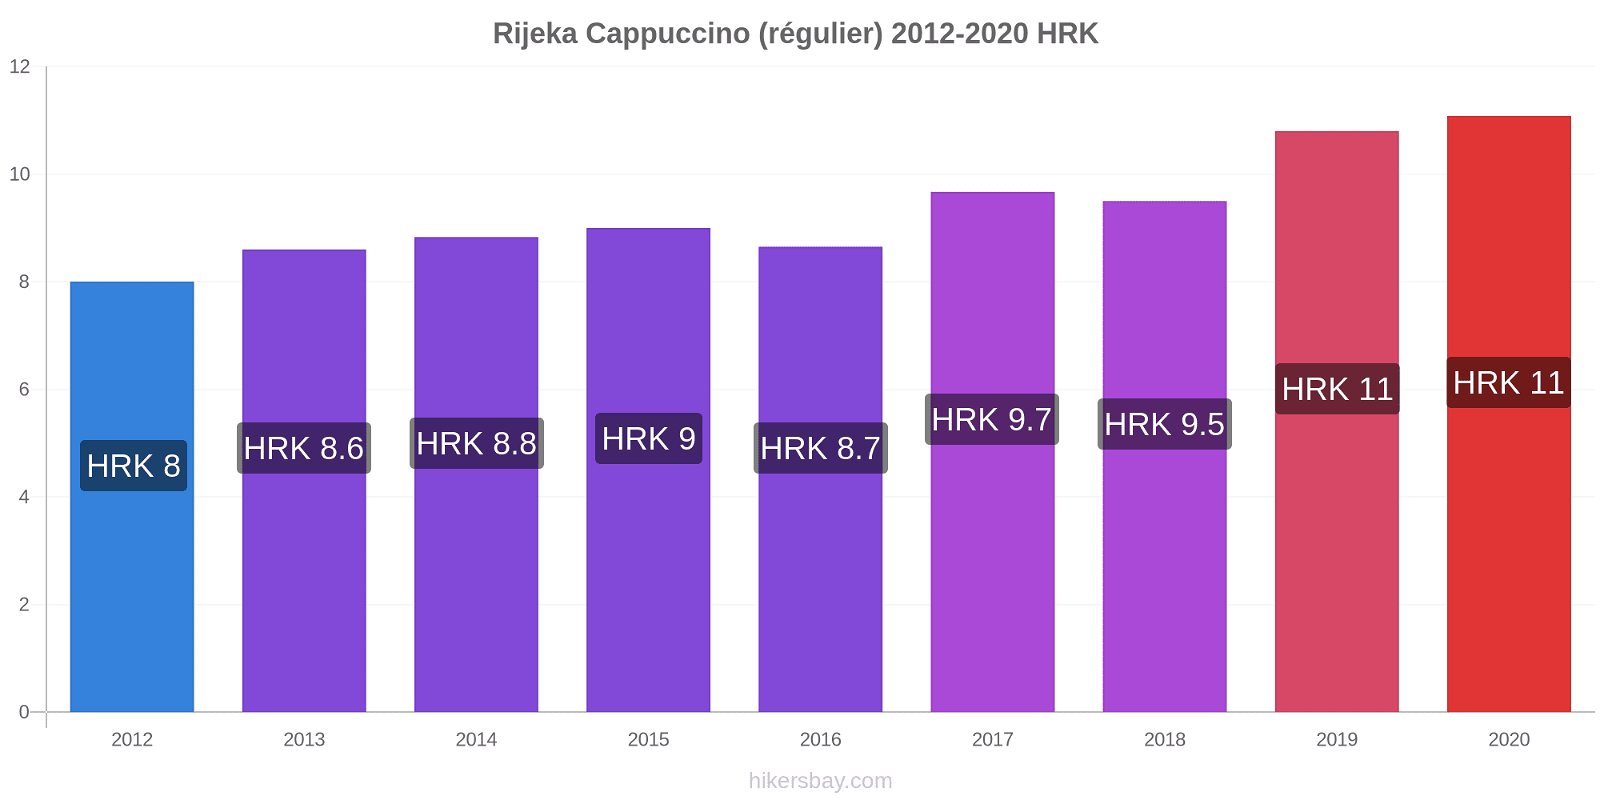 Rijeka changements de prix Cappuccino (régulier) hikersbay.com